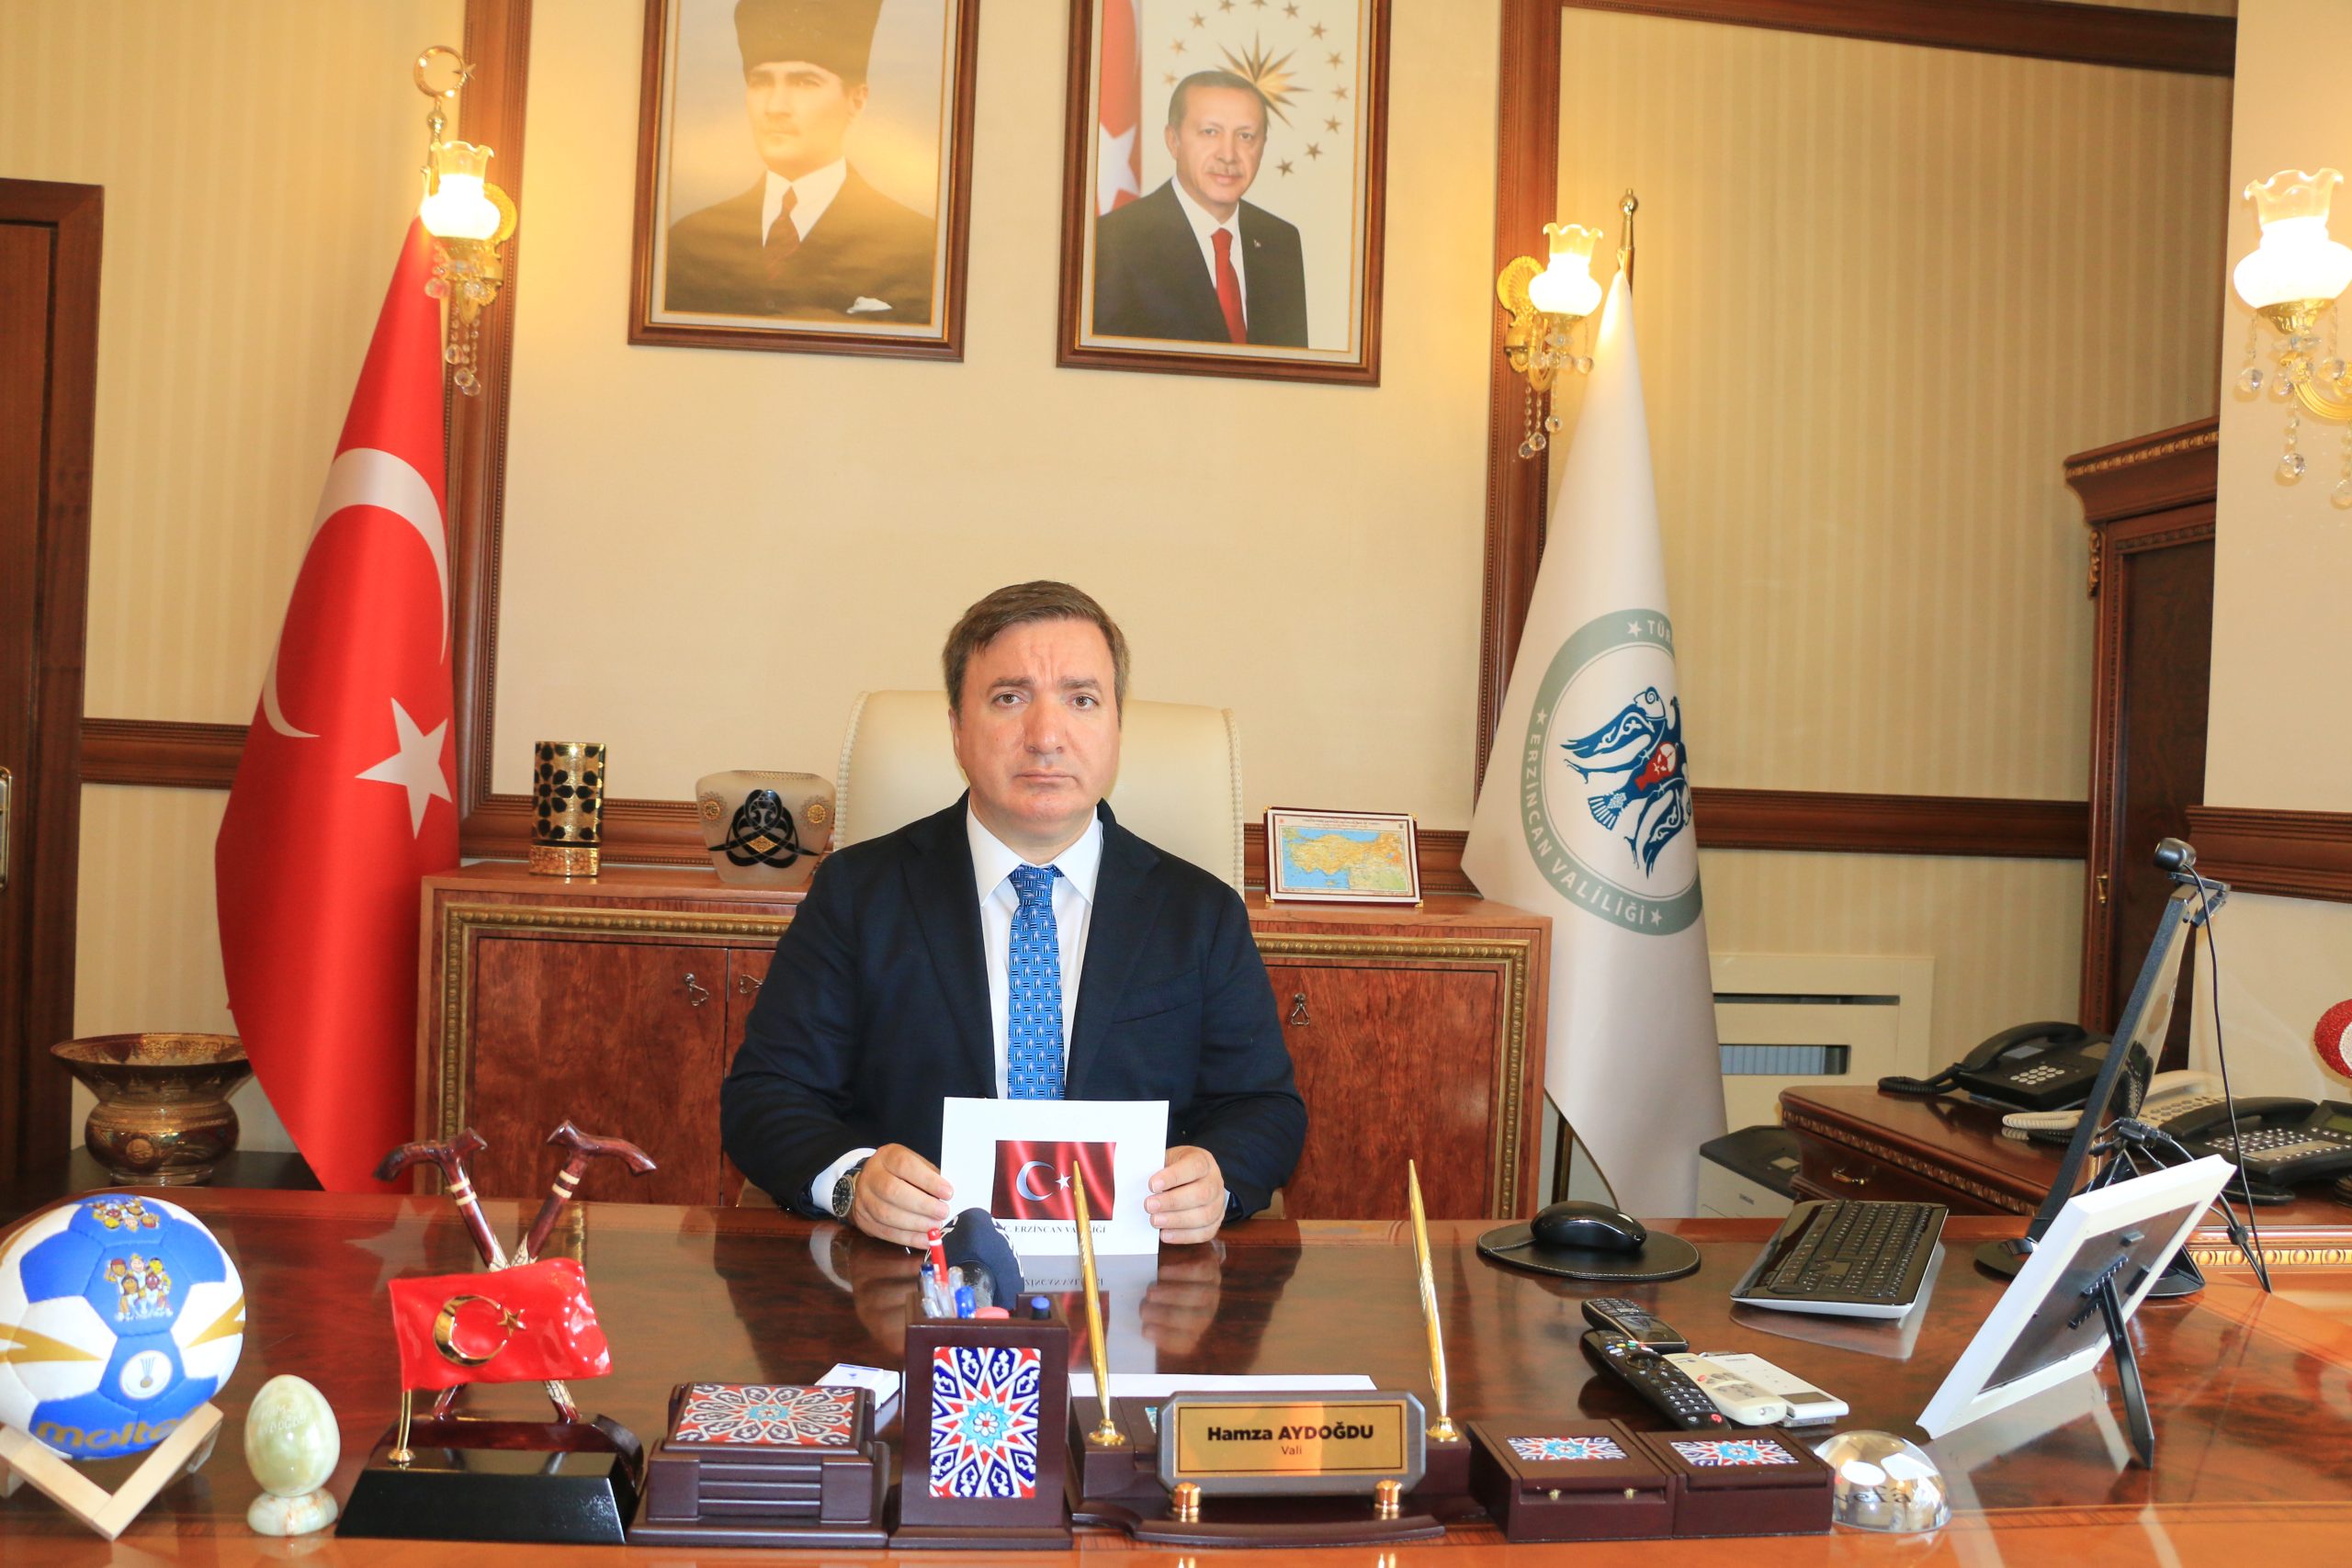 Türk Polis Teşkilat’ımızın kuruluşunun 179. yıldönümünü en içten duygularımla kutluyorum